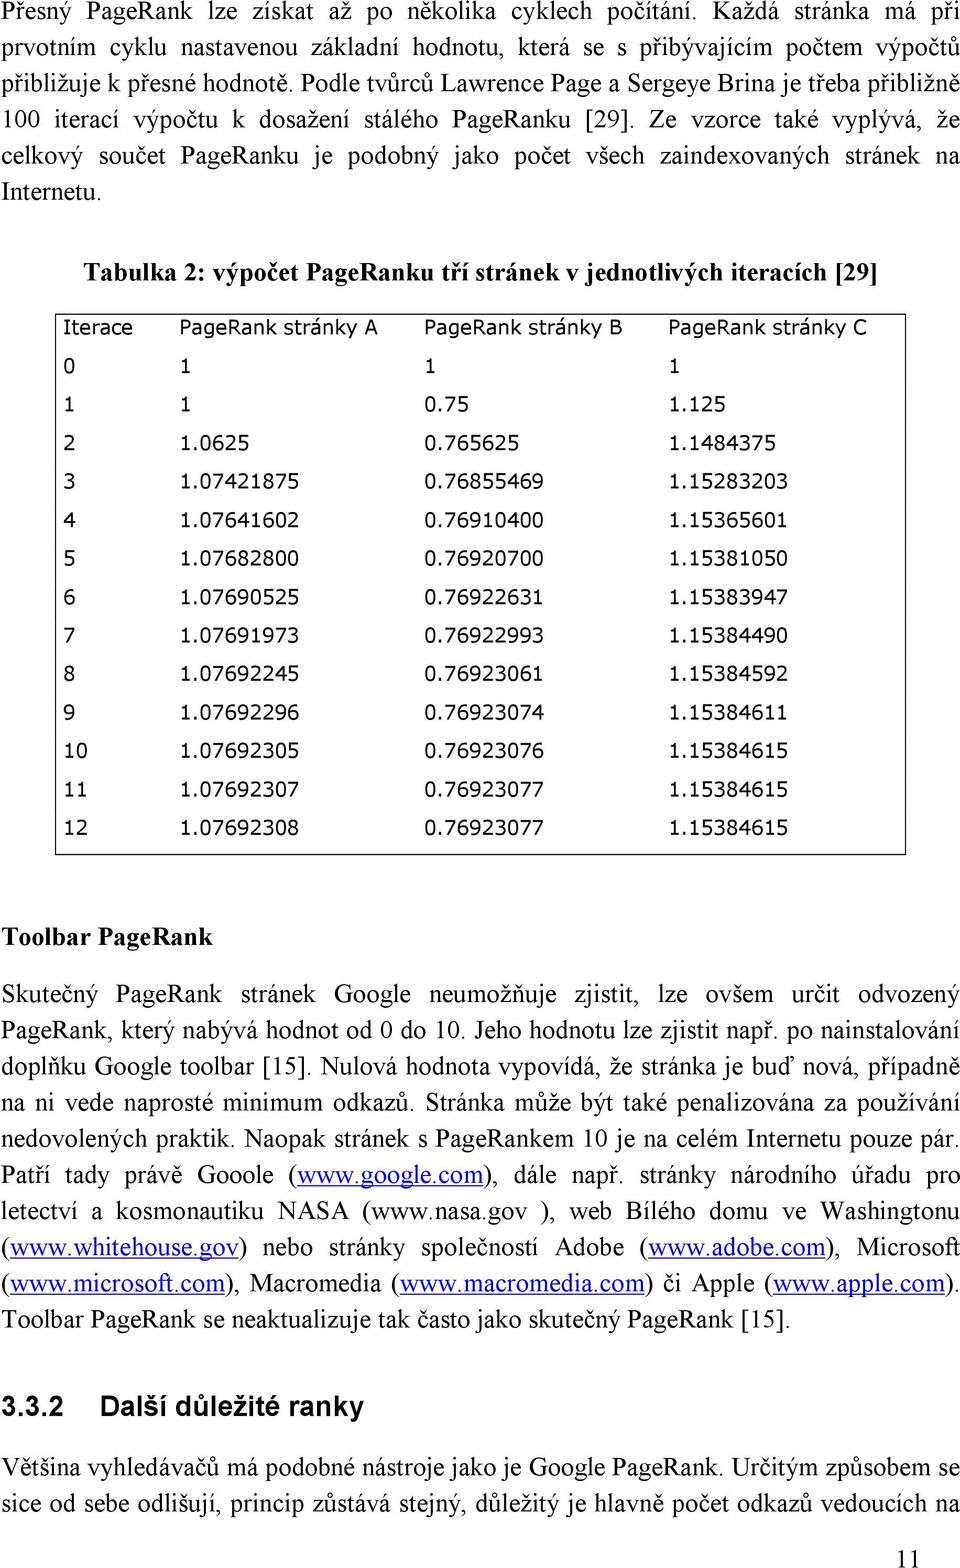 Ze vzorce také vyplývá, že celkový součet PageRanku je podobný jako počet všech zaindexovaných stránek na Internetu.